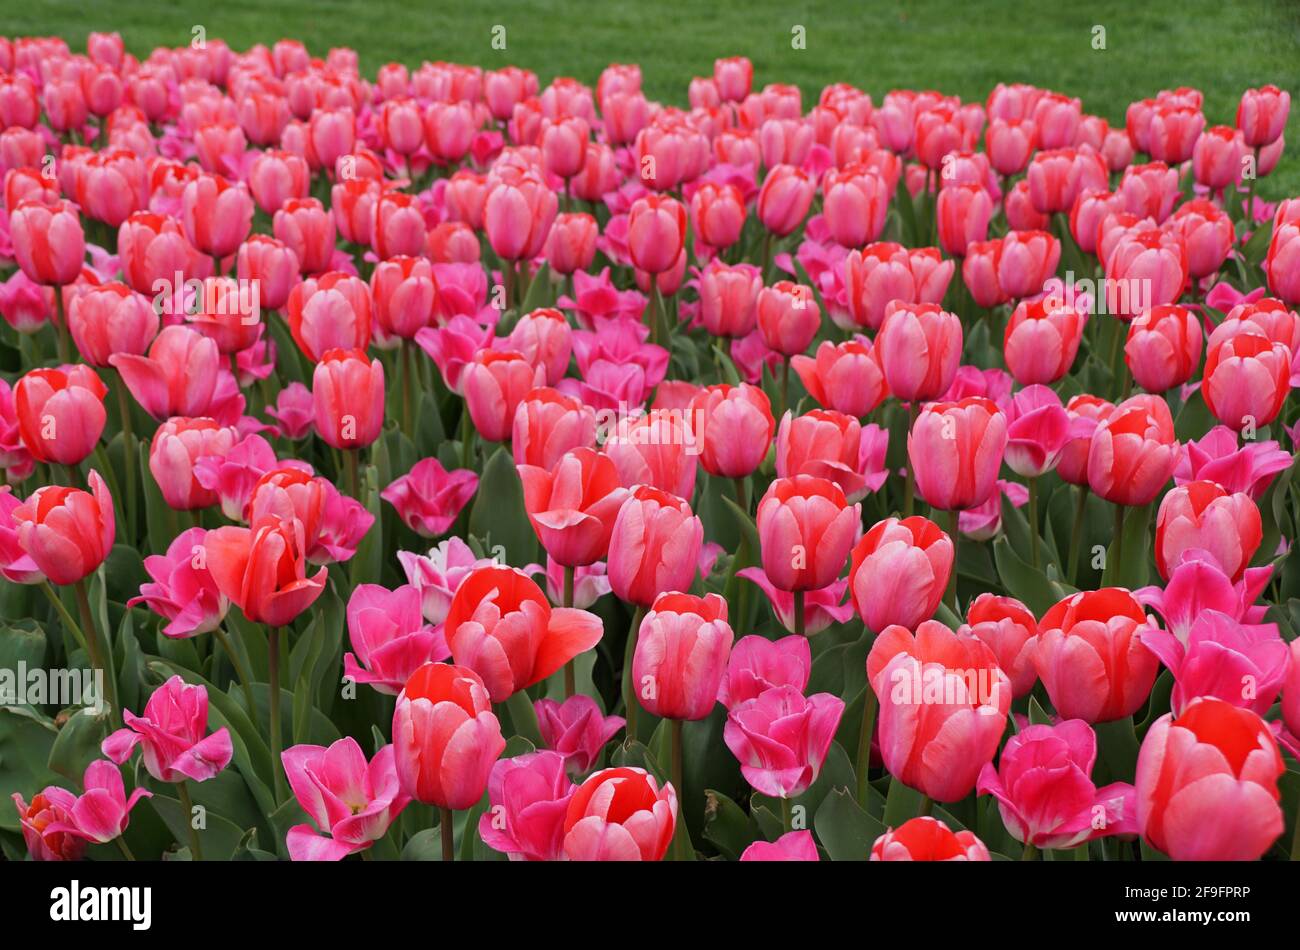 Belle Rose Fleurs de printemps Van Eijk Darwin Tulipes x 30 ampoules